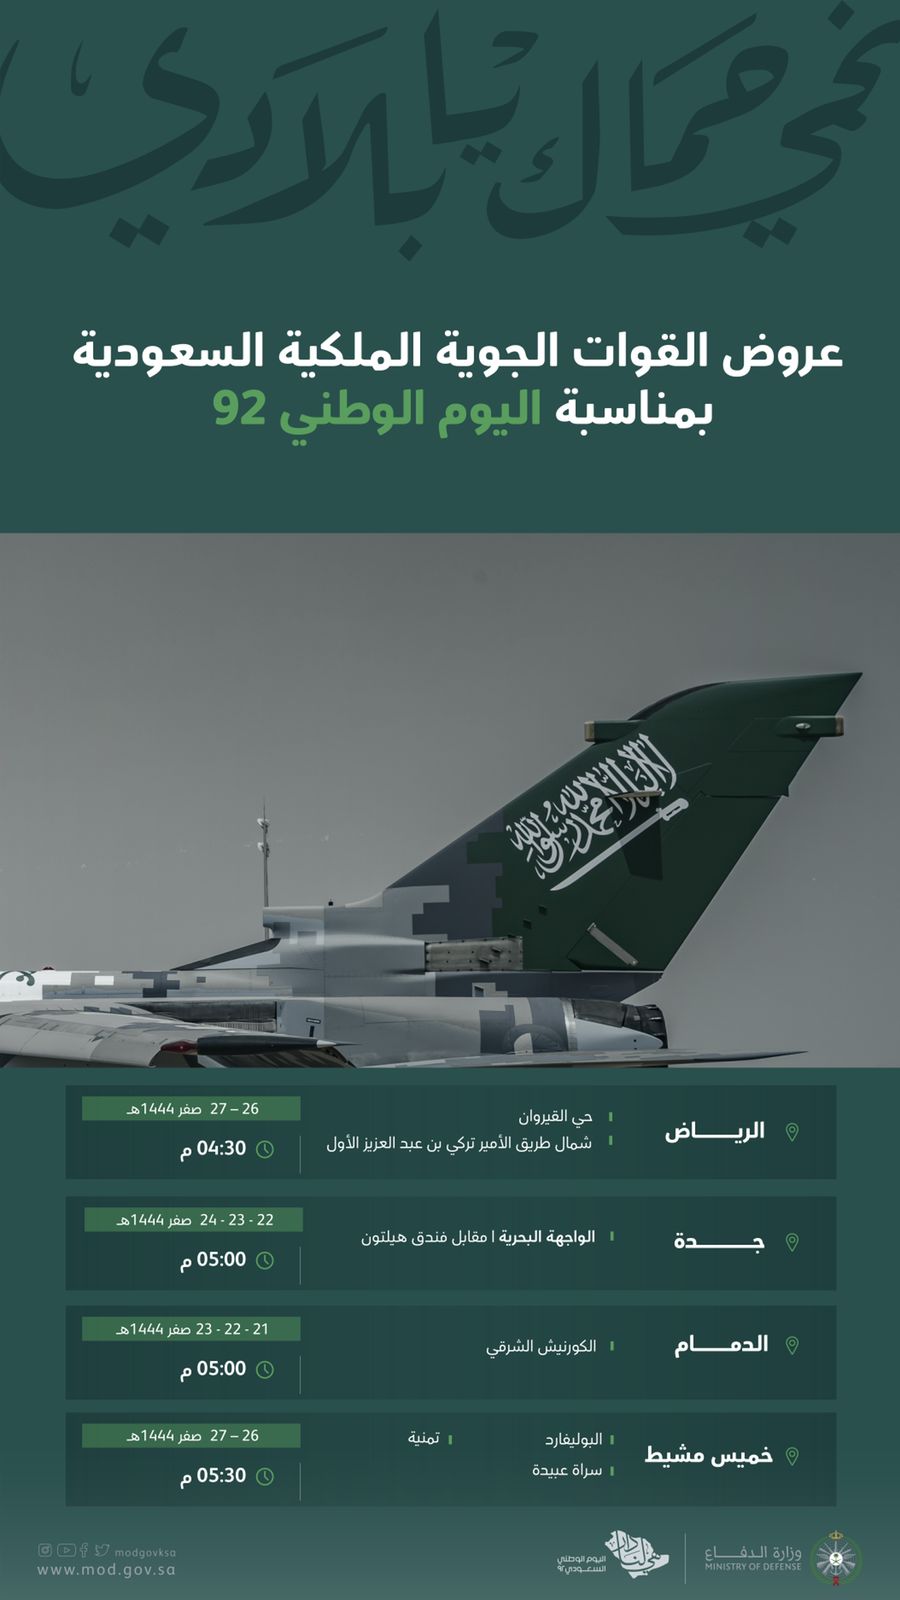 مواقع ومواعيد عروض القوات الجوية في اليوم الوطني 92 للسعودية